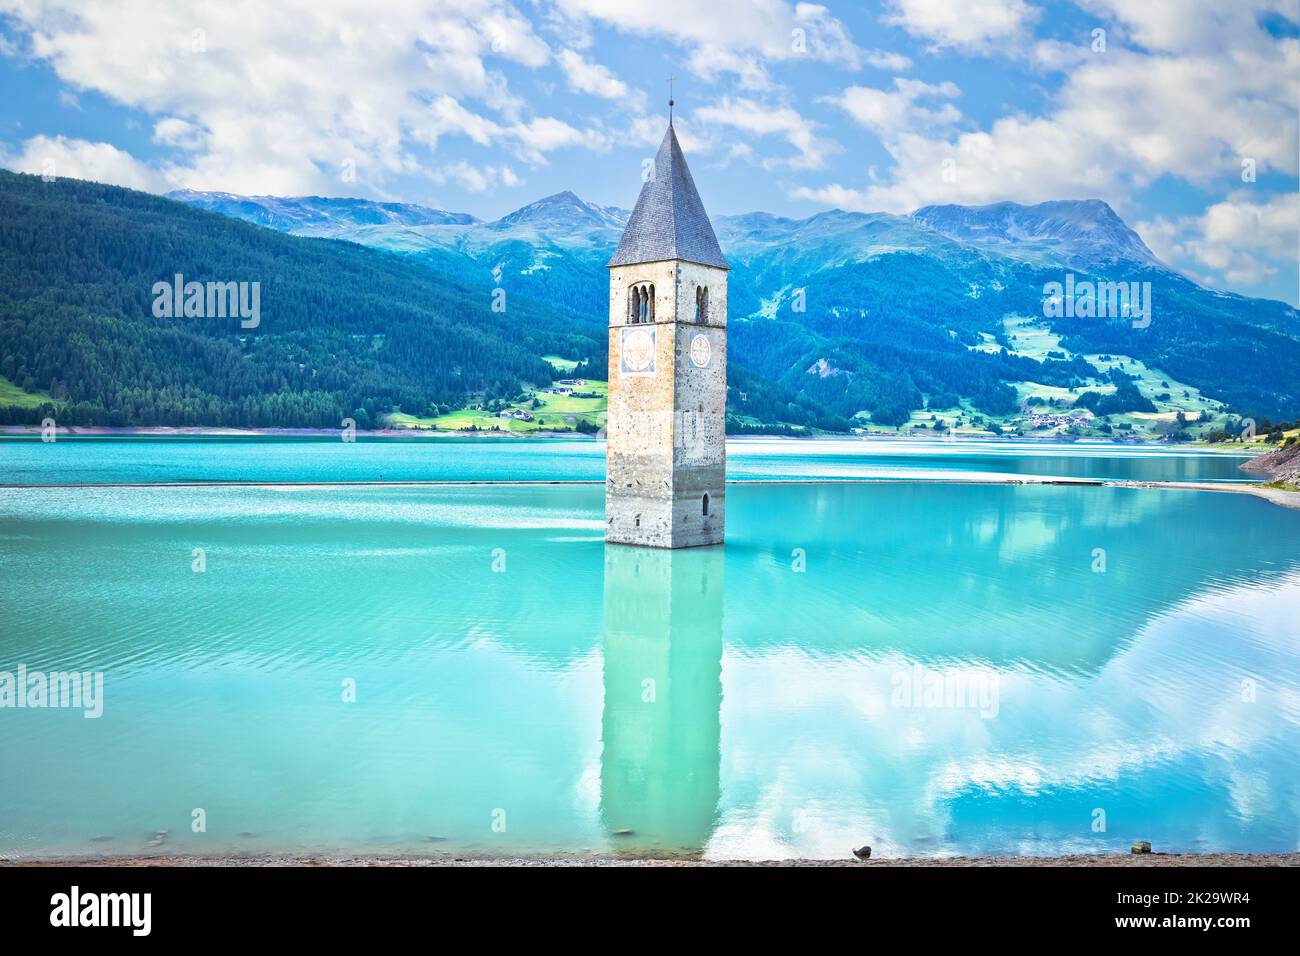 Campanile sommerso di Curon Venosta o Graun im Vinschgau sul lago di Reschen vista panoramica Foto Stock